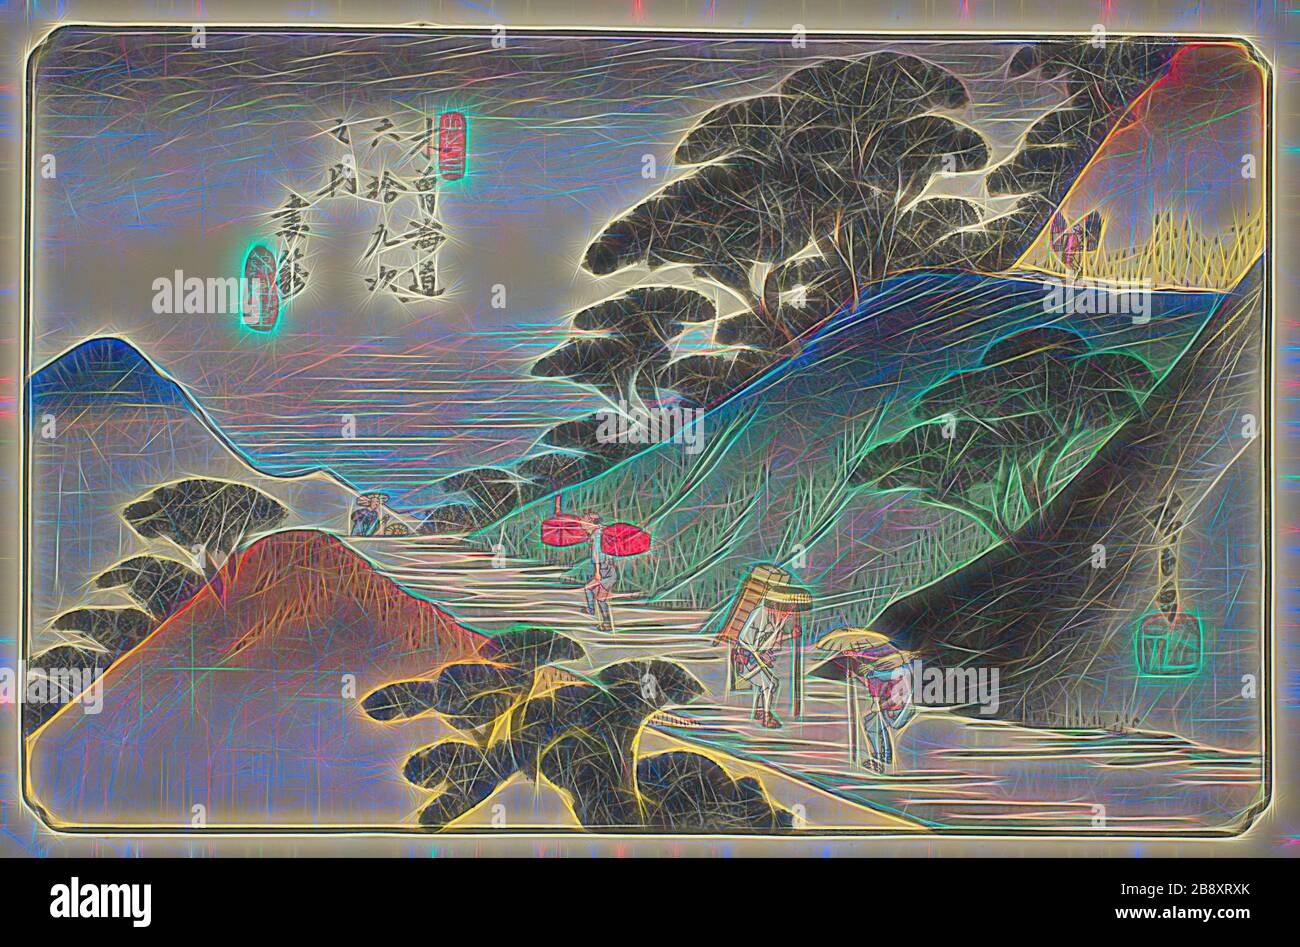 No 43: Tsumagome, de la série soixante-neuf stations du Kisokaido (Kisokaido rokujukyu tsugi no uchi), c. 1835/38, Utagawa Hiroshige ?? ??, Japonais, 1797-1858, Japon, imprimé color woodblock, oban, 26,0 x 37,8 cm (10 1/4 x 14 7/8 in.), repensé par Gibon, design de glanissement chaleureux et gai de la luminosité et des rayons de lumière radiance. L'art classique réinventé avec une touche moderne. La photographie inspirée du futurisme, qui embrasse l'énergie dynamique de la technologie moderne, du mouvement, de la vitesse et révolutionne la culture. Banque D'Images